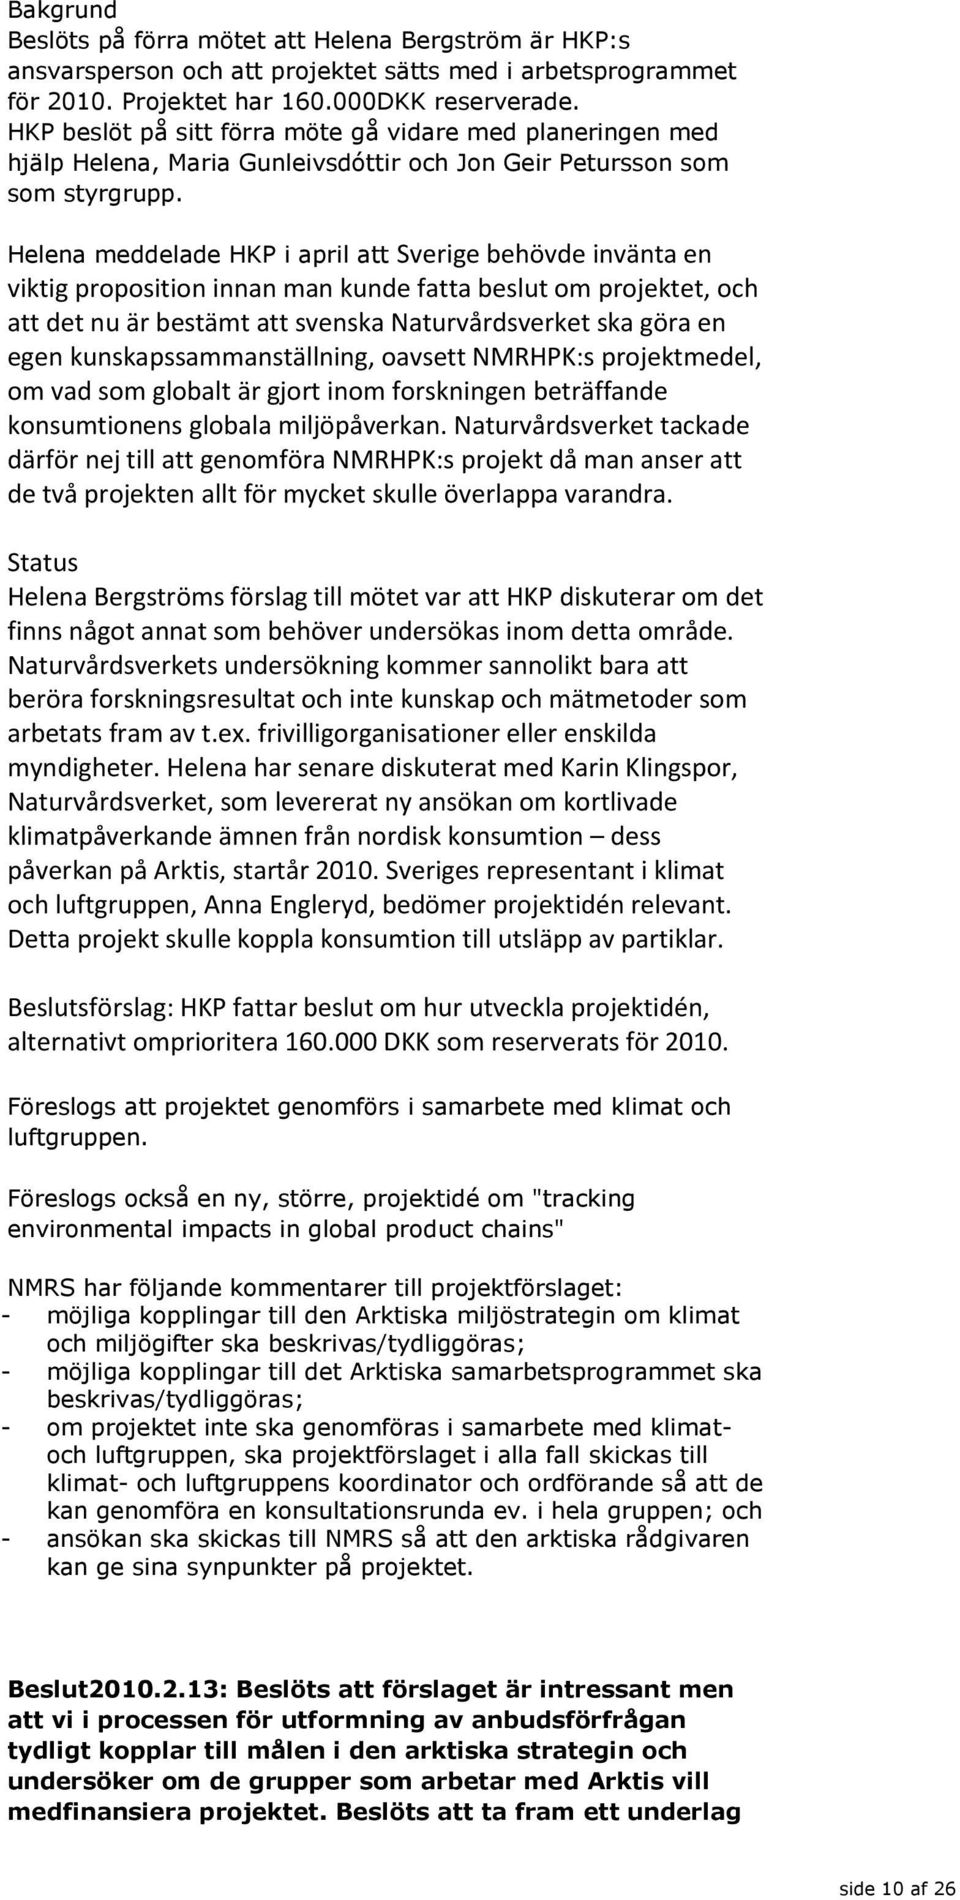 Helena meddelade HKP i april att Sverige behövde invänta en viktig proposition innan man kunde fatta beslut om projektet, och att det nu är bestämt att svenska Naturvårdsverket ska göra en egen